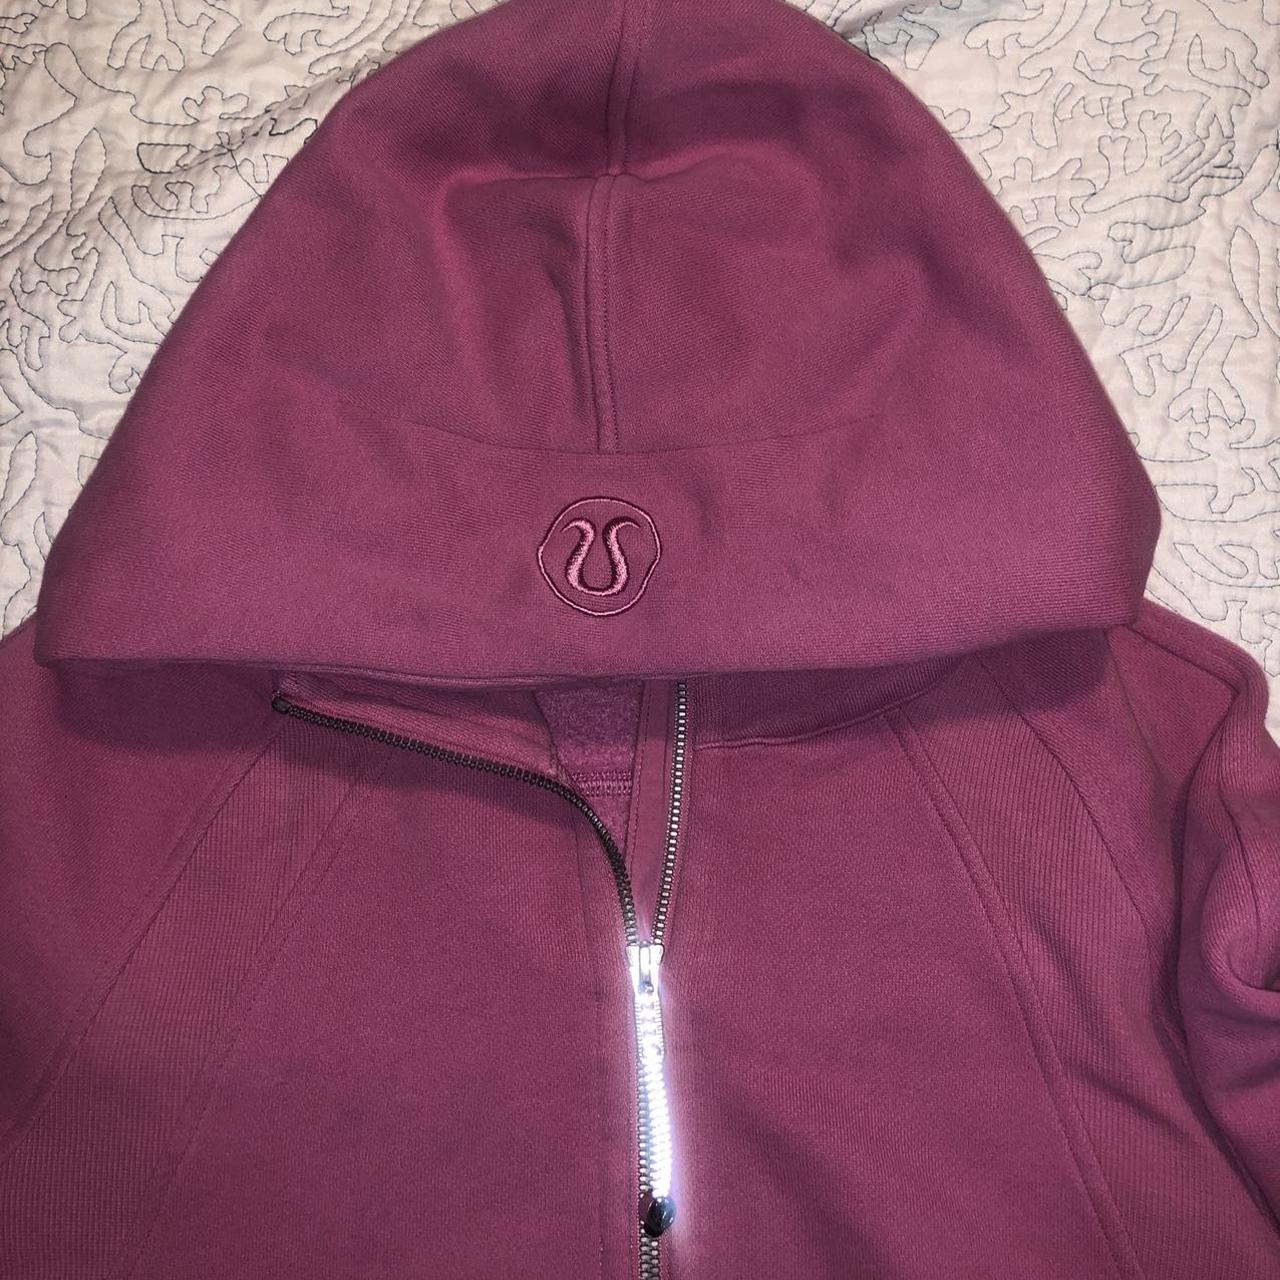 Lululemon women's hooded pullover quarter zip jacket Burgundy Size